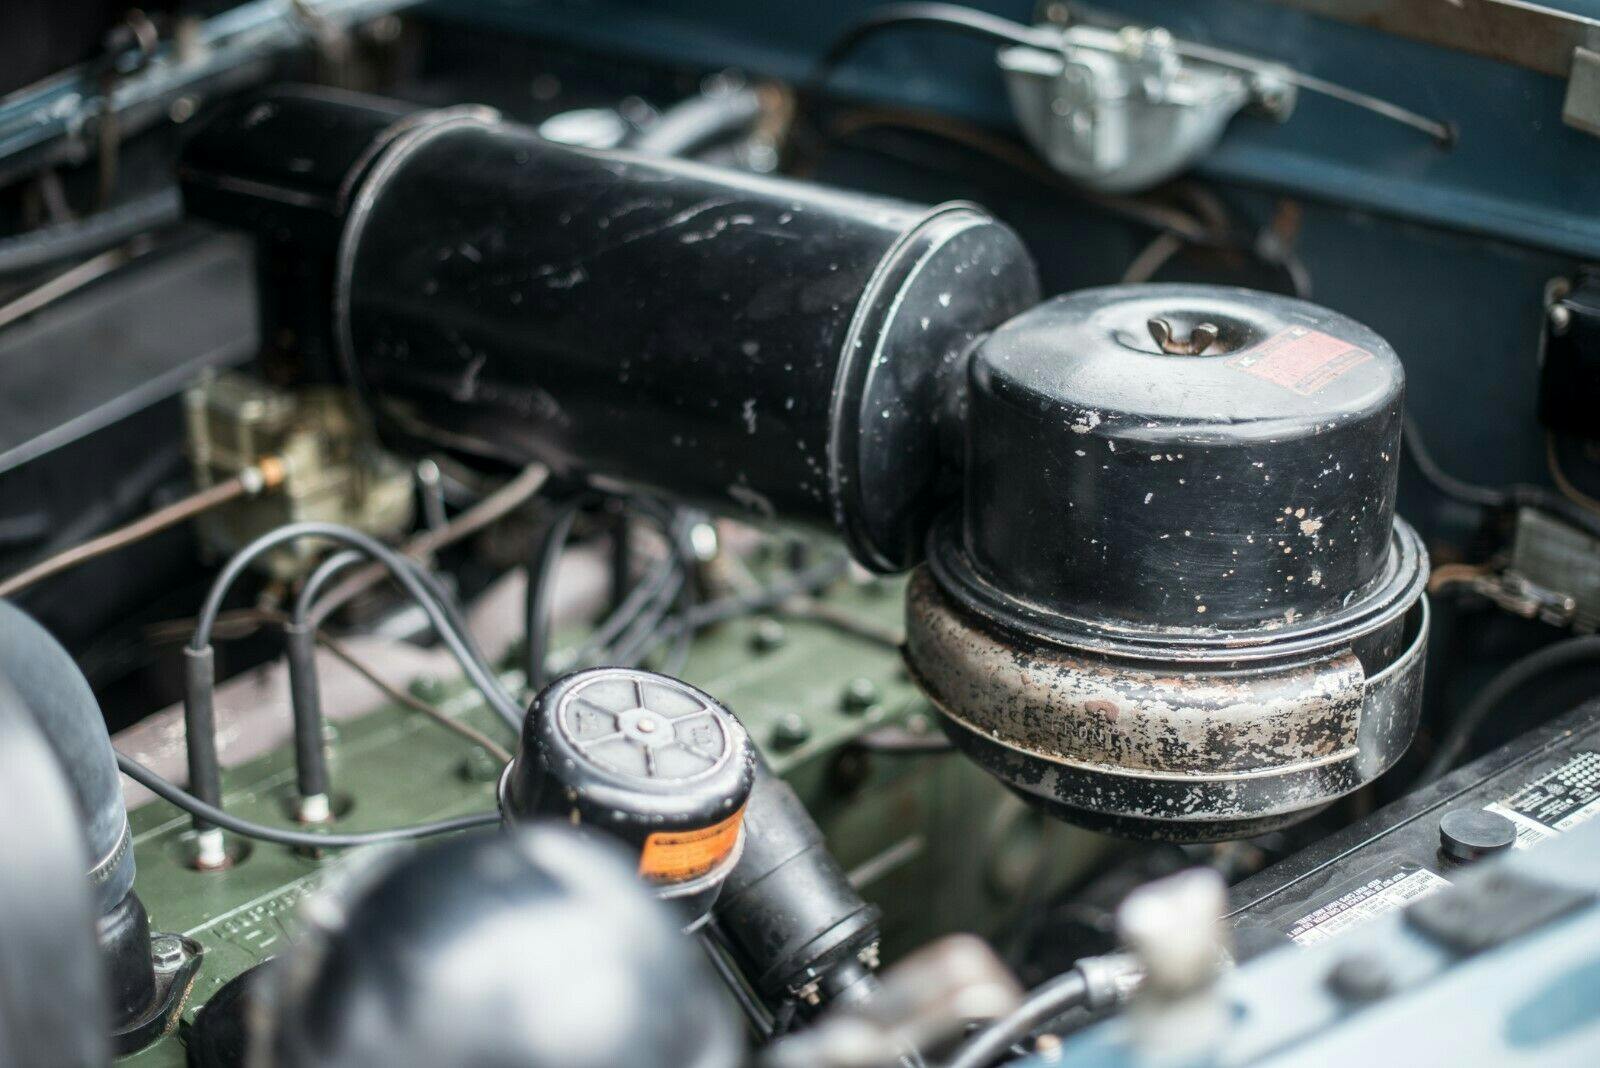 1949 Packard Deluxe Club Sedan - Engine